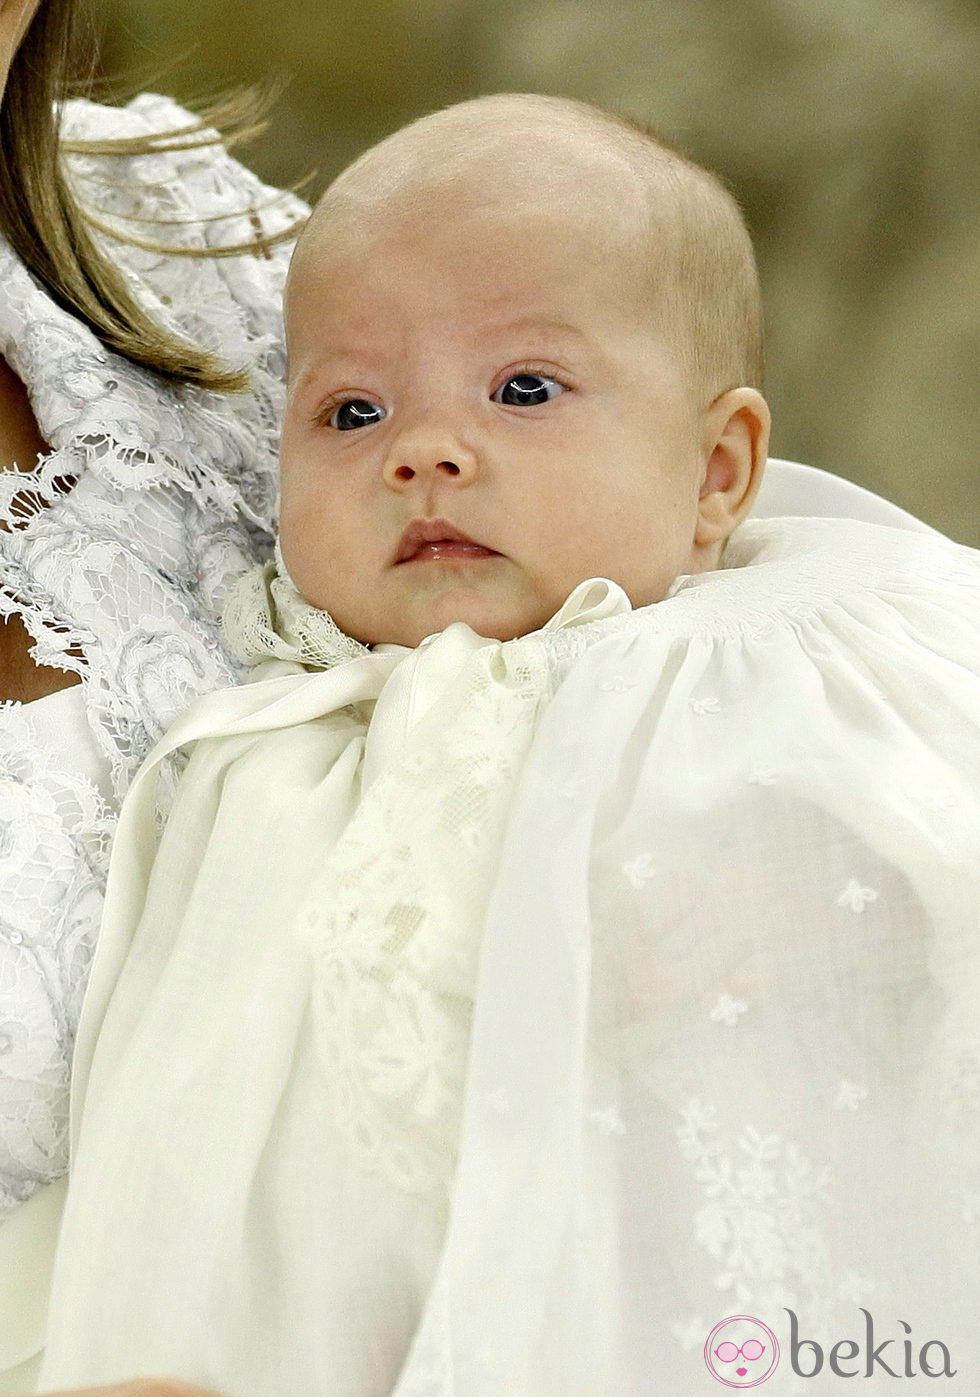 La Infanta Sofía en su bautizo en 2007